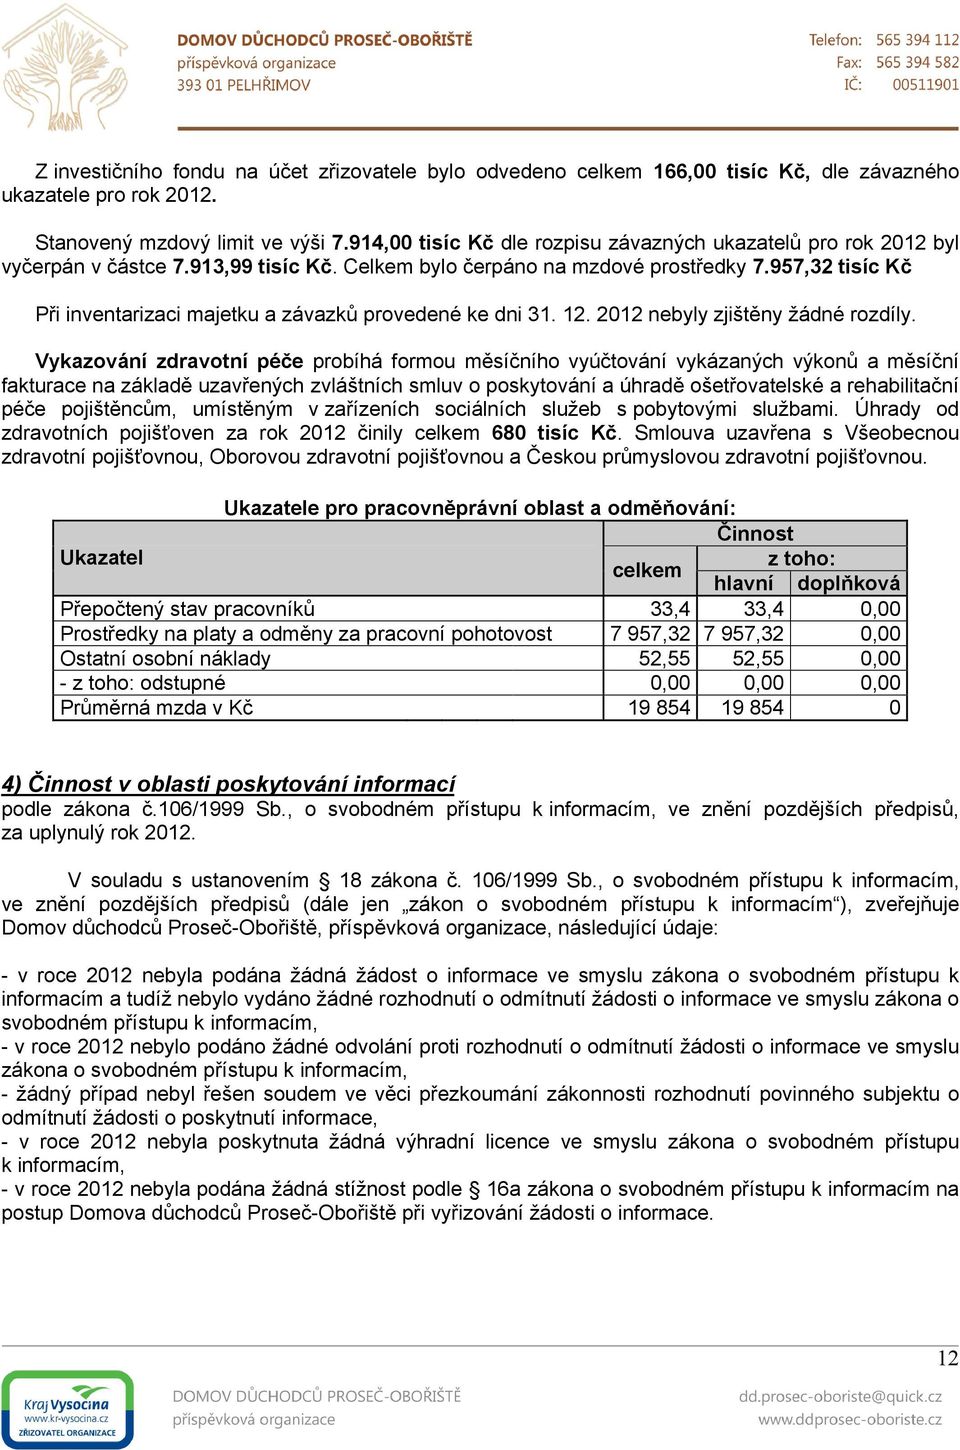 957,32 tisíc Kč Při inventarizaci majetku a závazků provedené ke dni 31. 12. 2012 nebyly zjištěny žádné rozdíly.